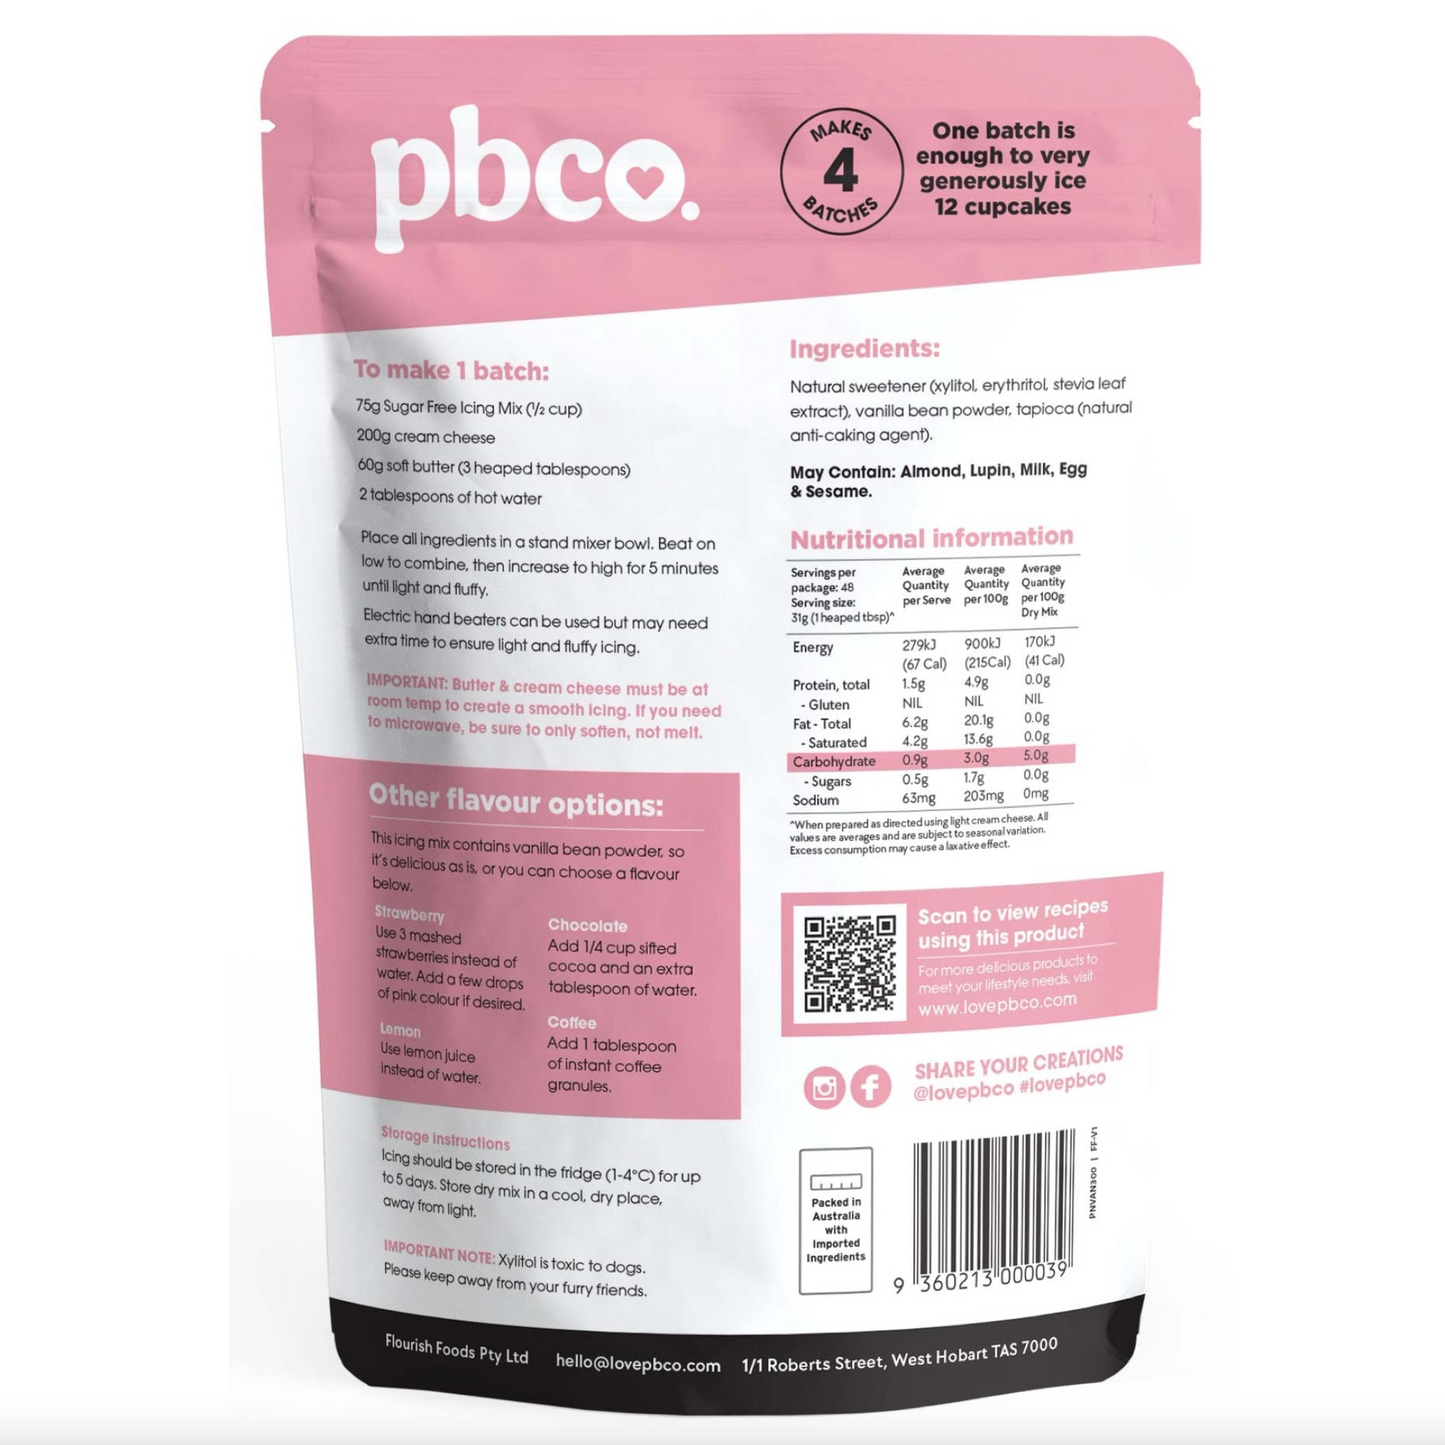 PBCo 98% Sugar Free Vanilla Icing Mix 300g, Keto Friendly